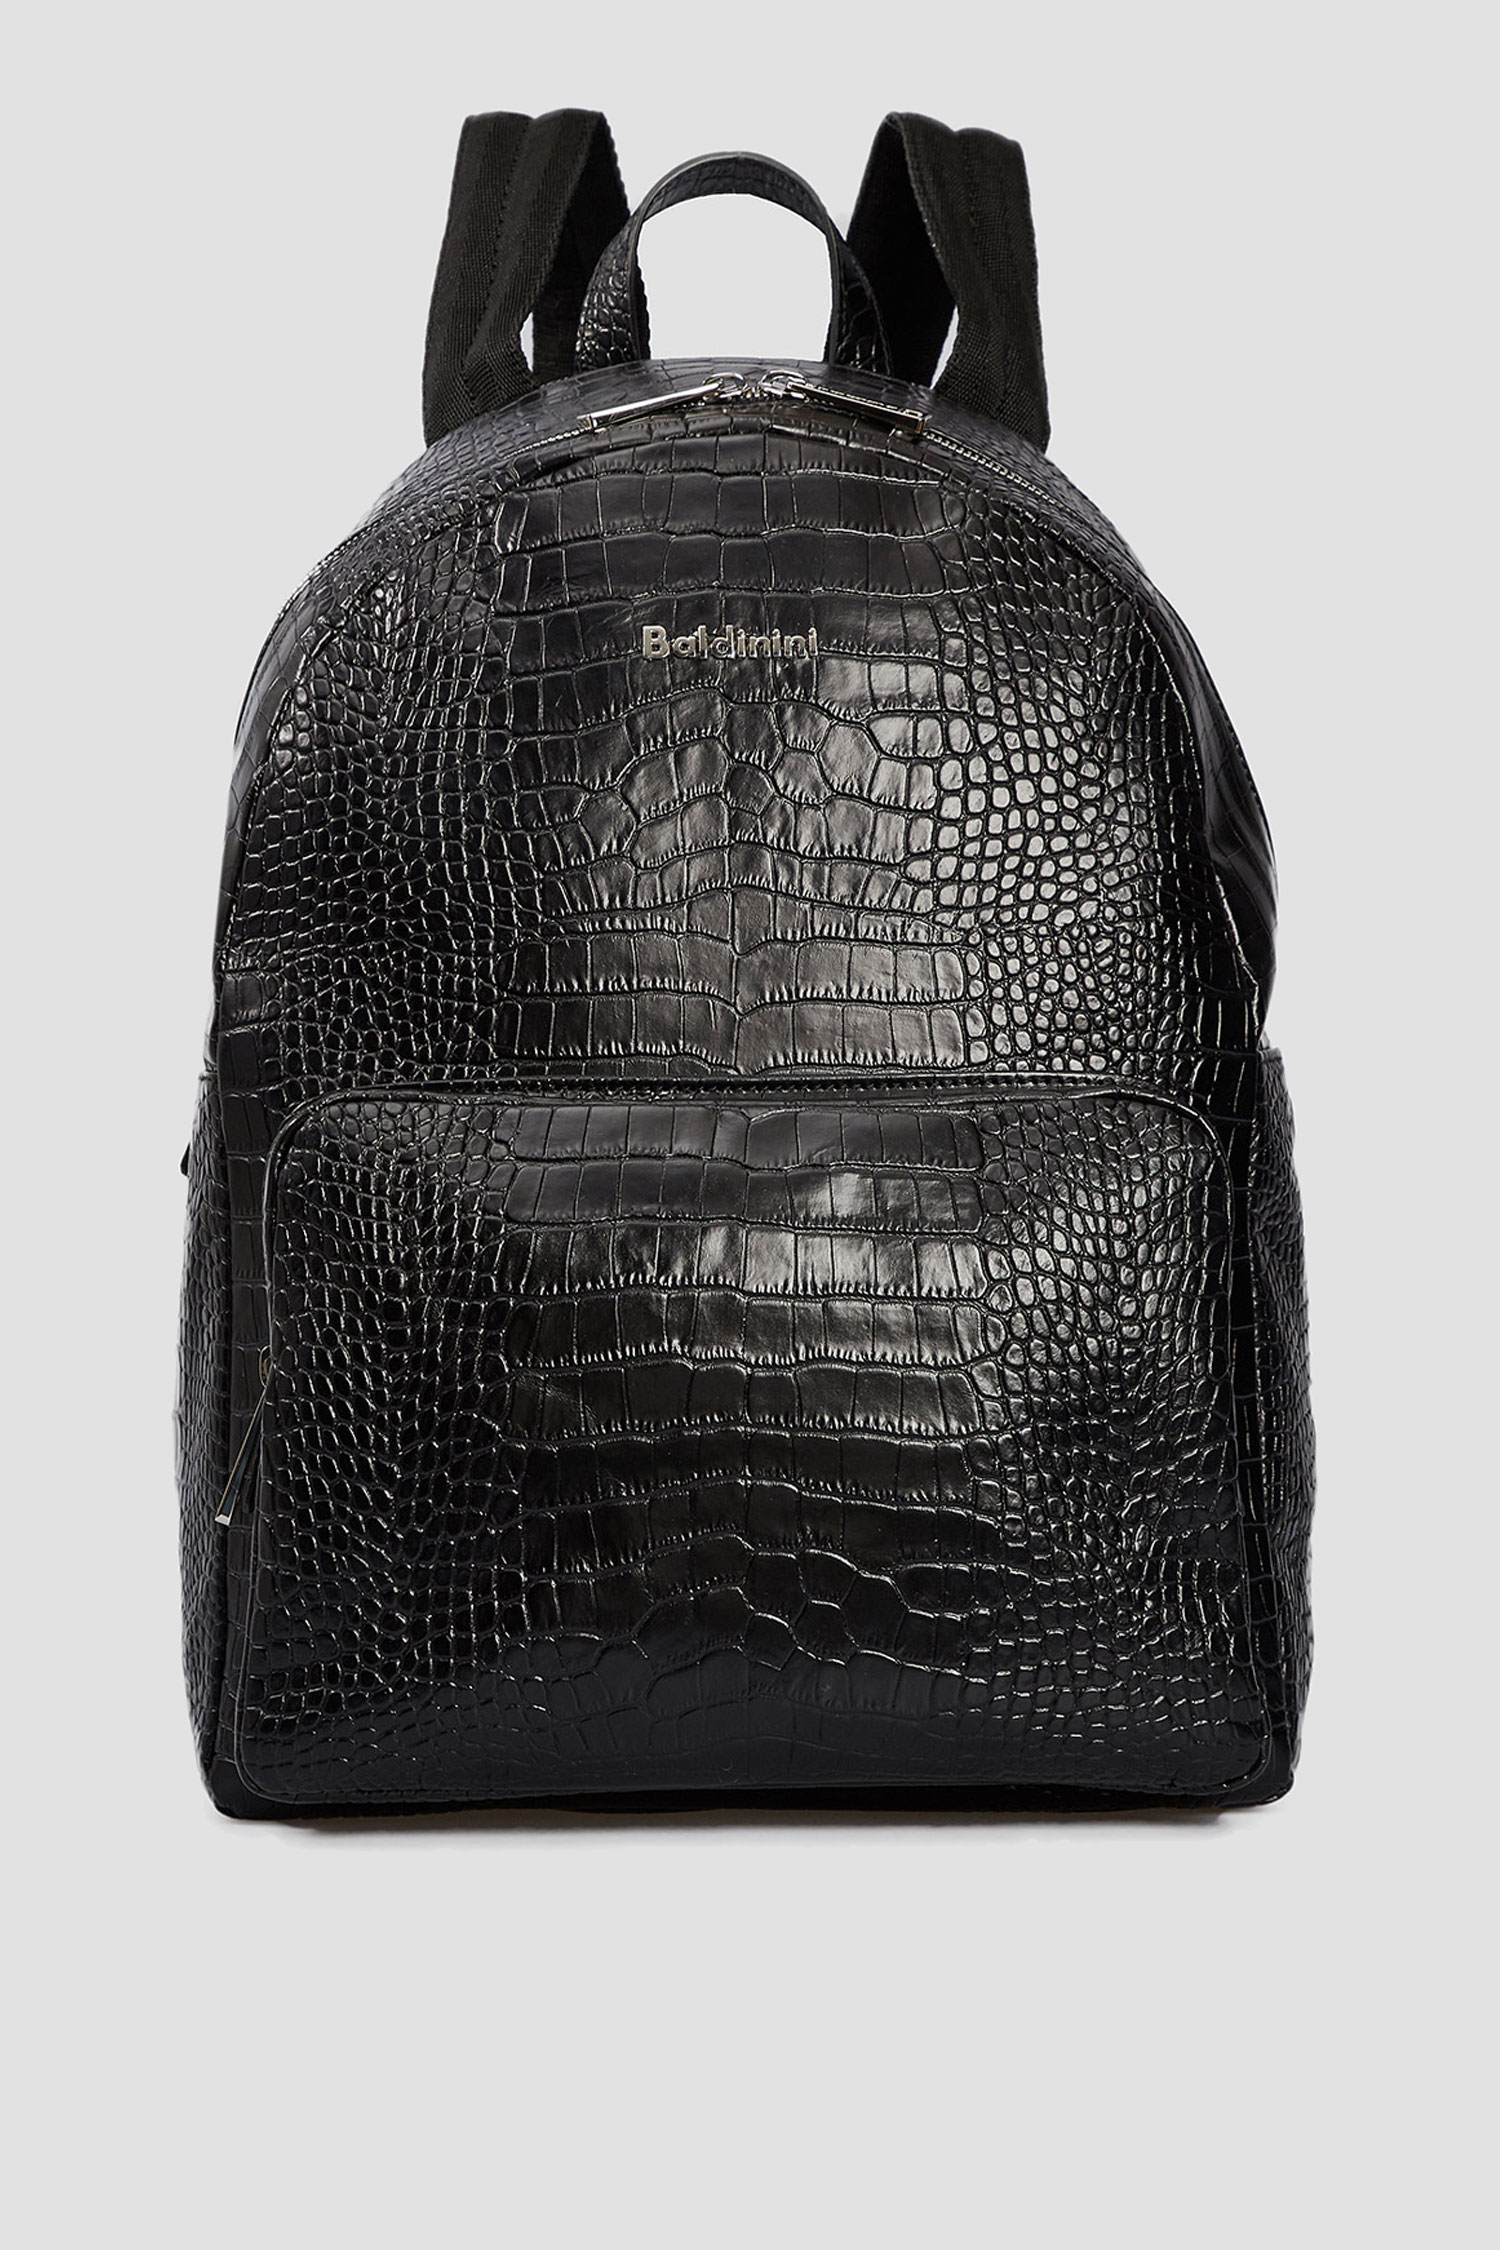 Чорний шкіряний рюкзак для хлопців Baldinini C2B003COCC;0000